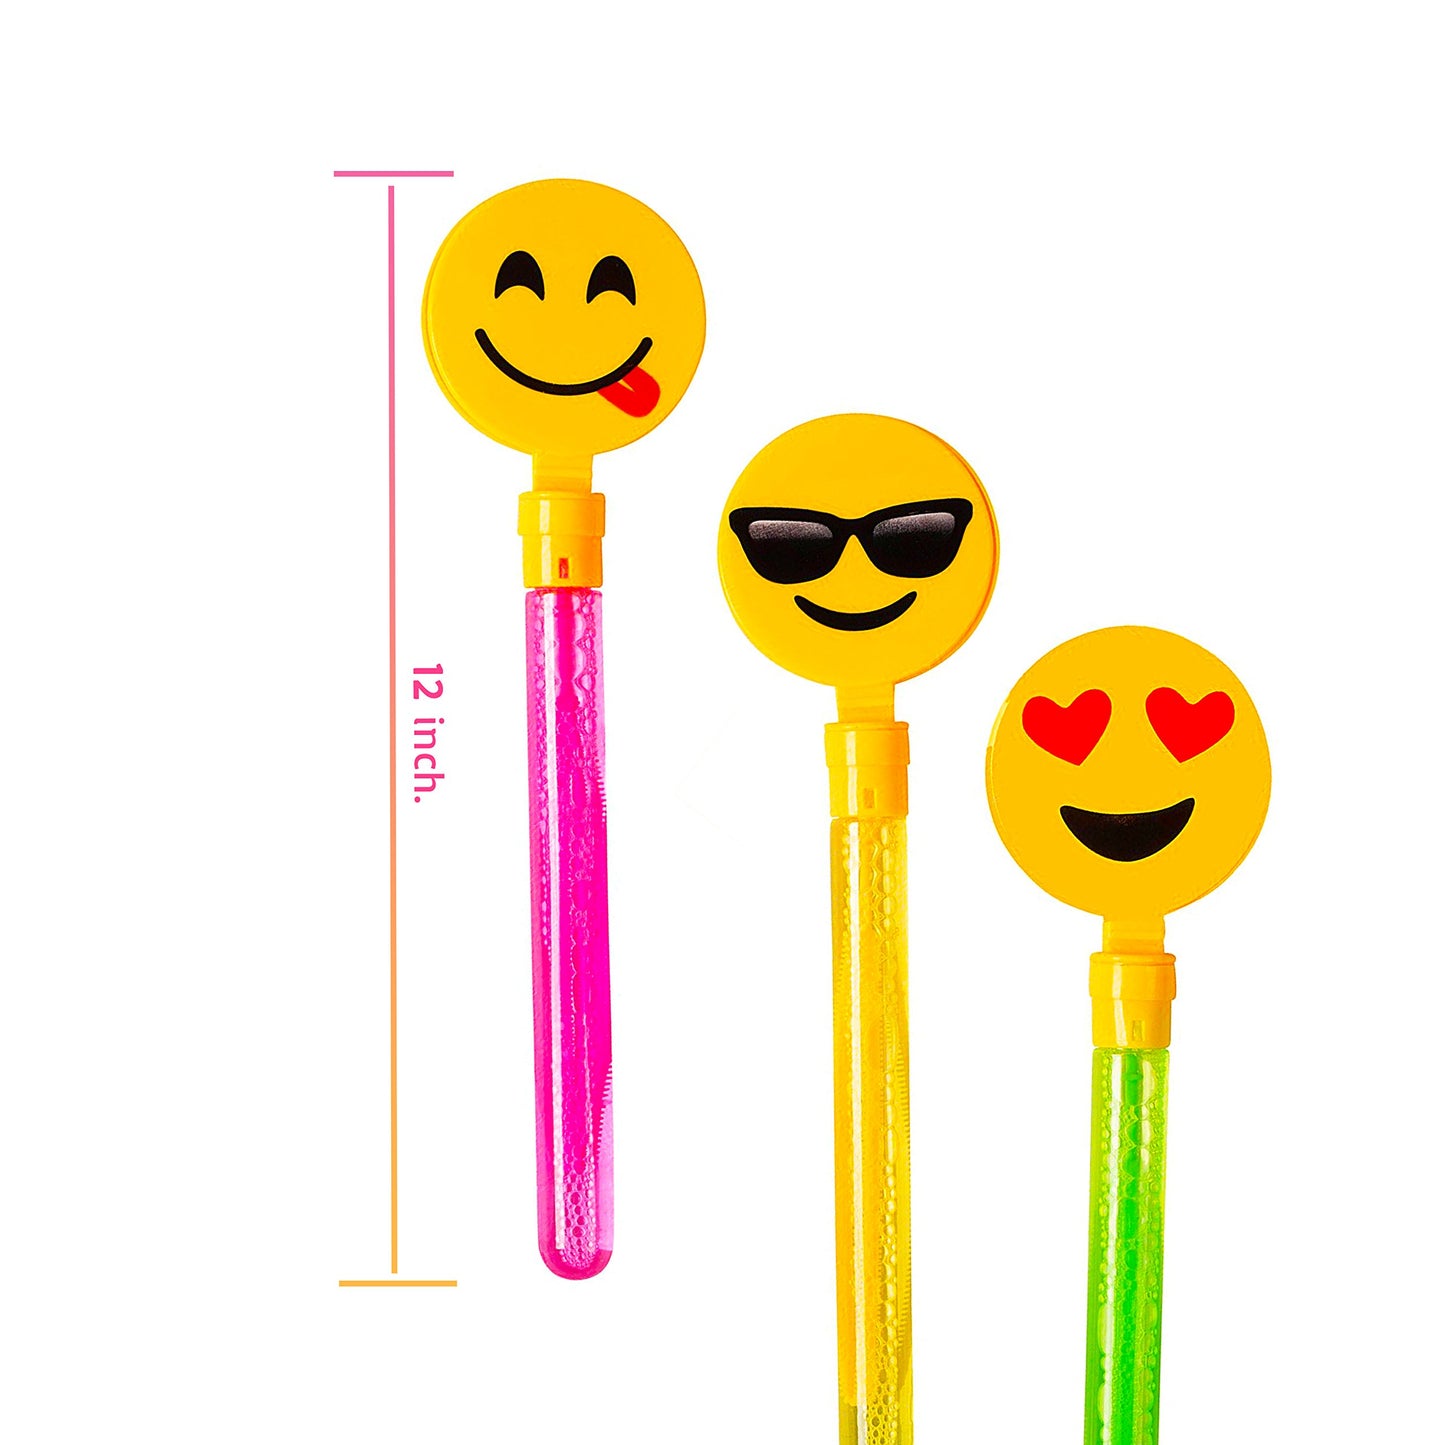 12 Pack Giant Bubble Wands Emoji Party Favor Toys - Bulk Bubbles Party Favors Clapper Toys For Kids